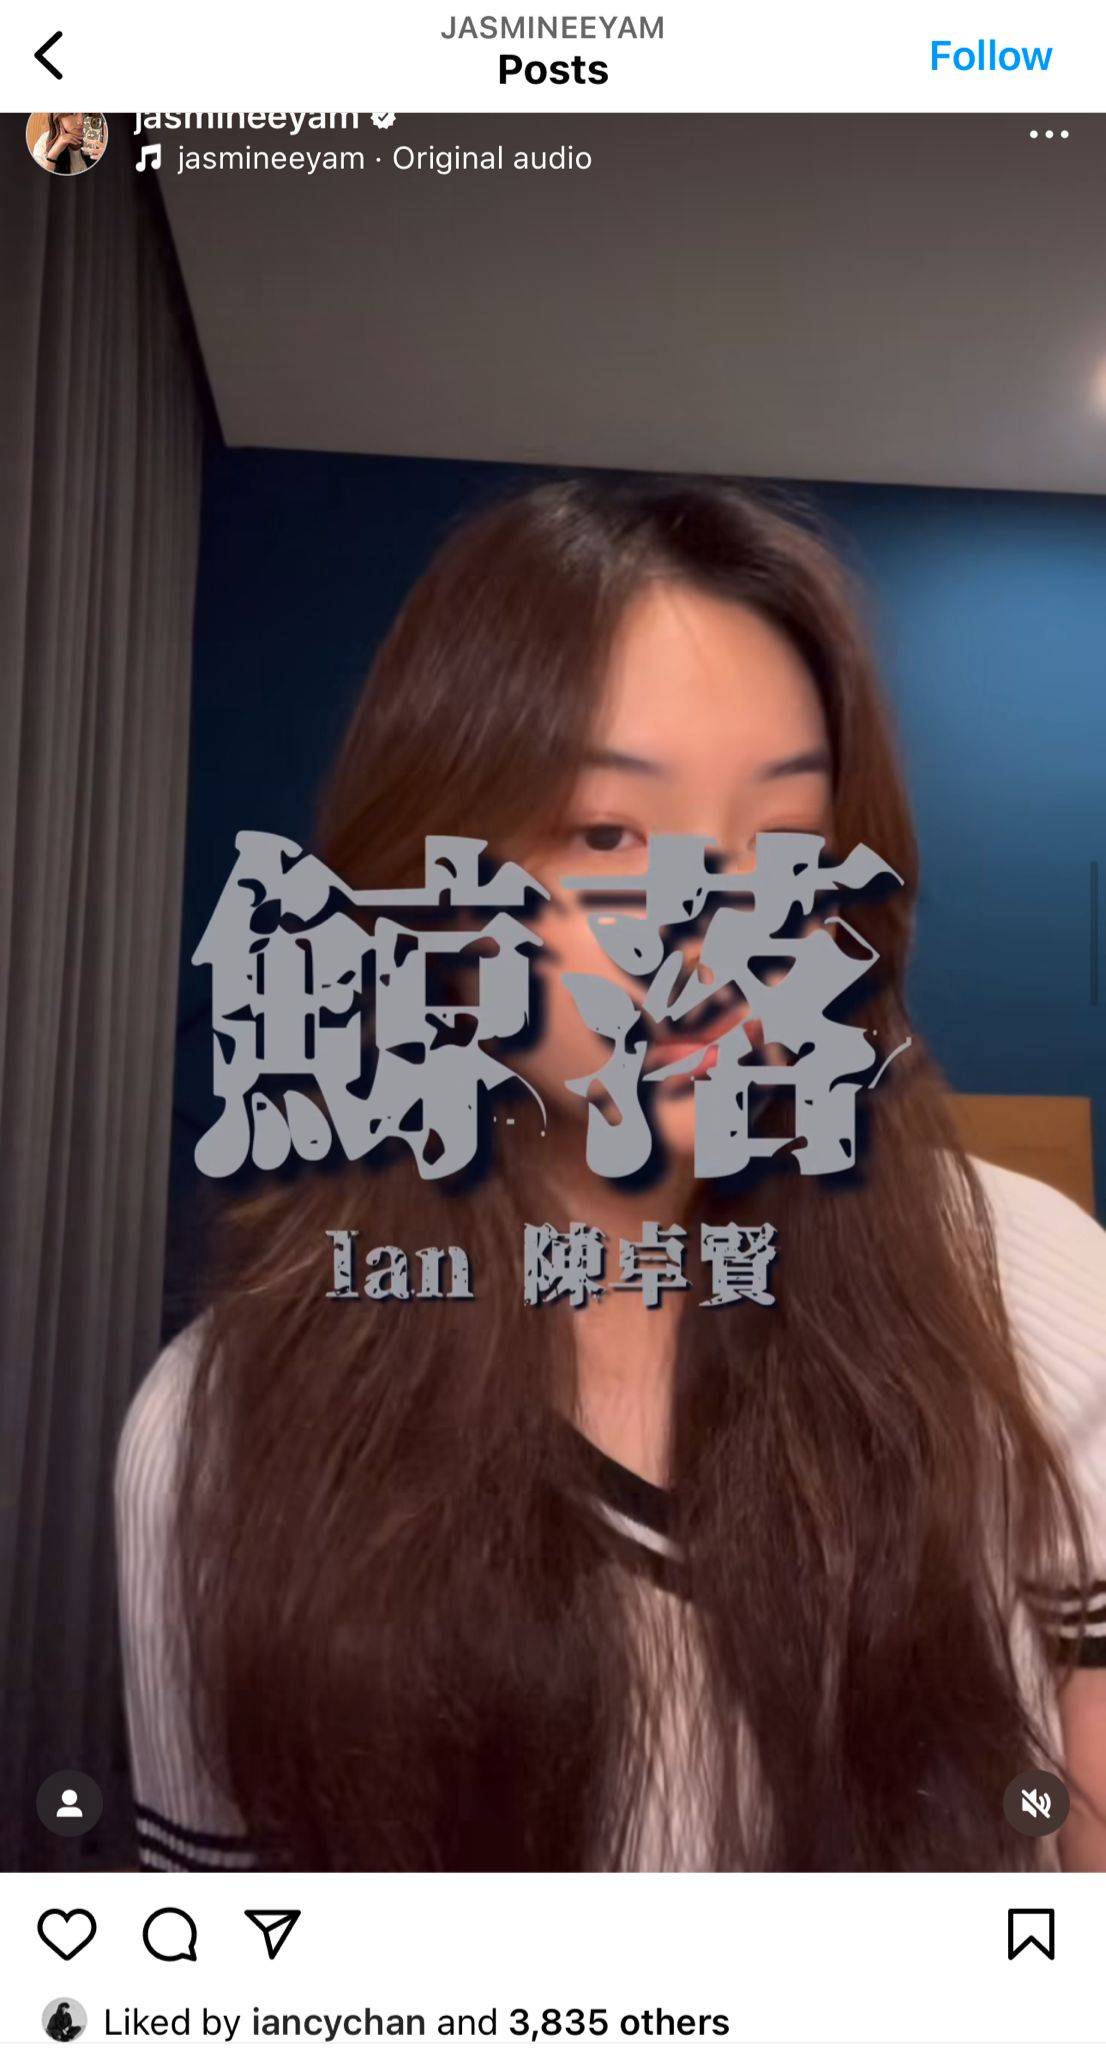 tvb 声梦传奇 任暟晴 陈卓贤 任暟晴在社交平台上上载了翻唱《鲸落》的影片。